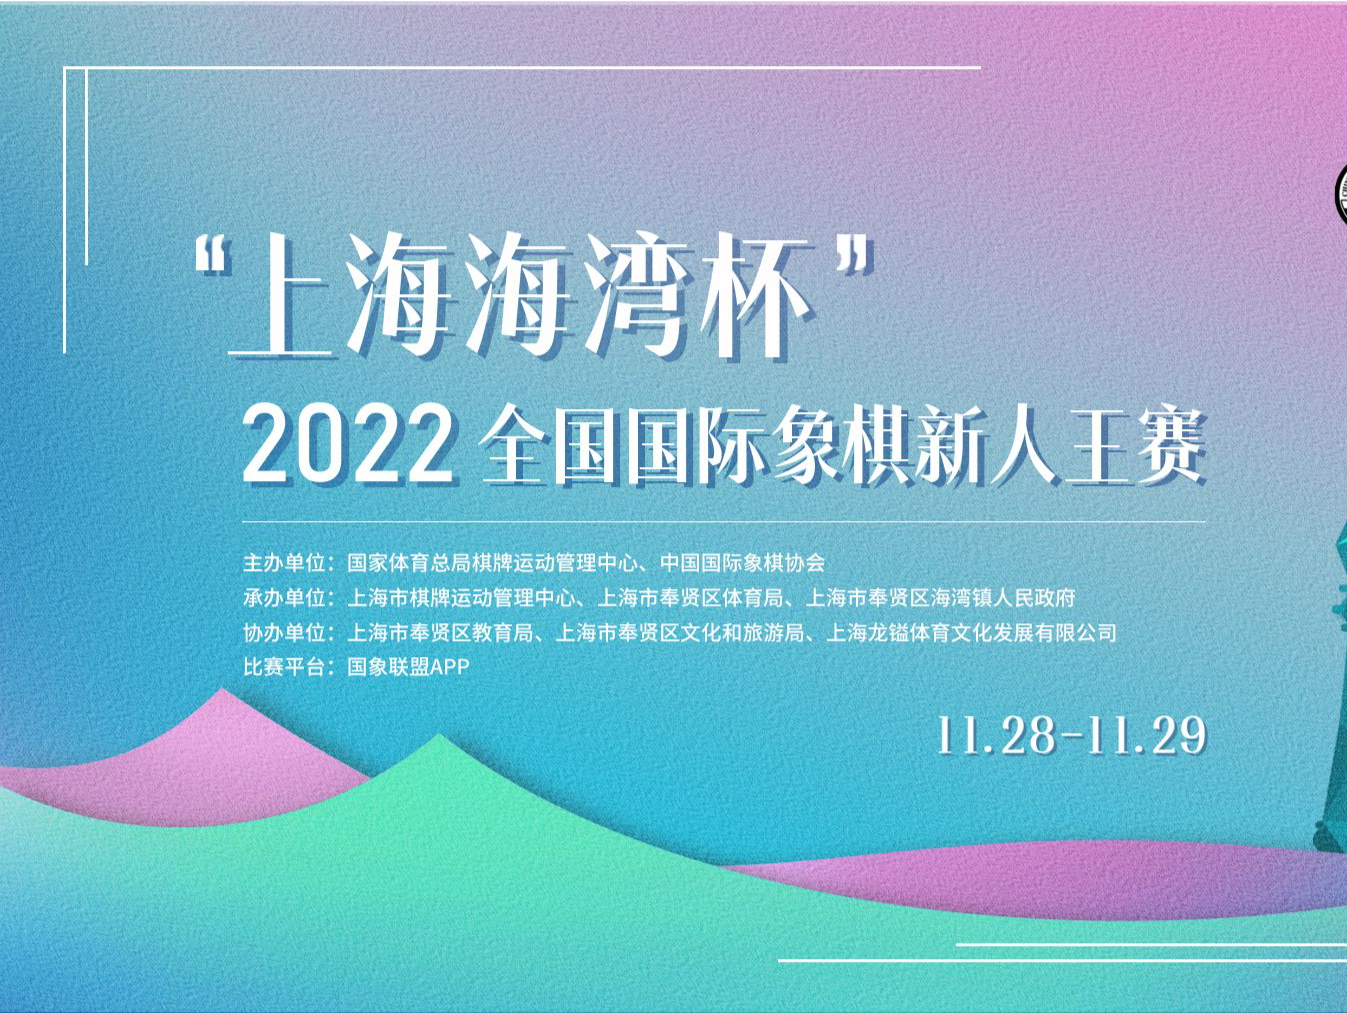 “上海海湾杯”2022全国国际象棋新人王赛11月举行